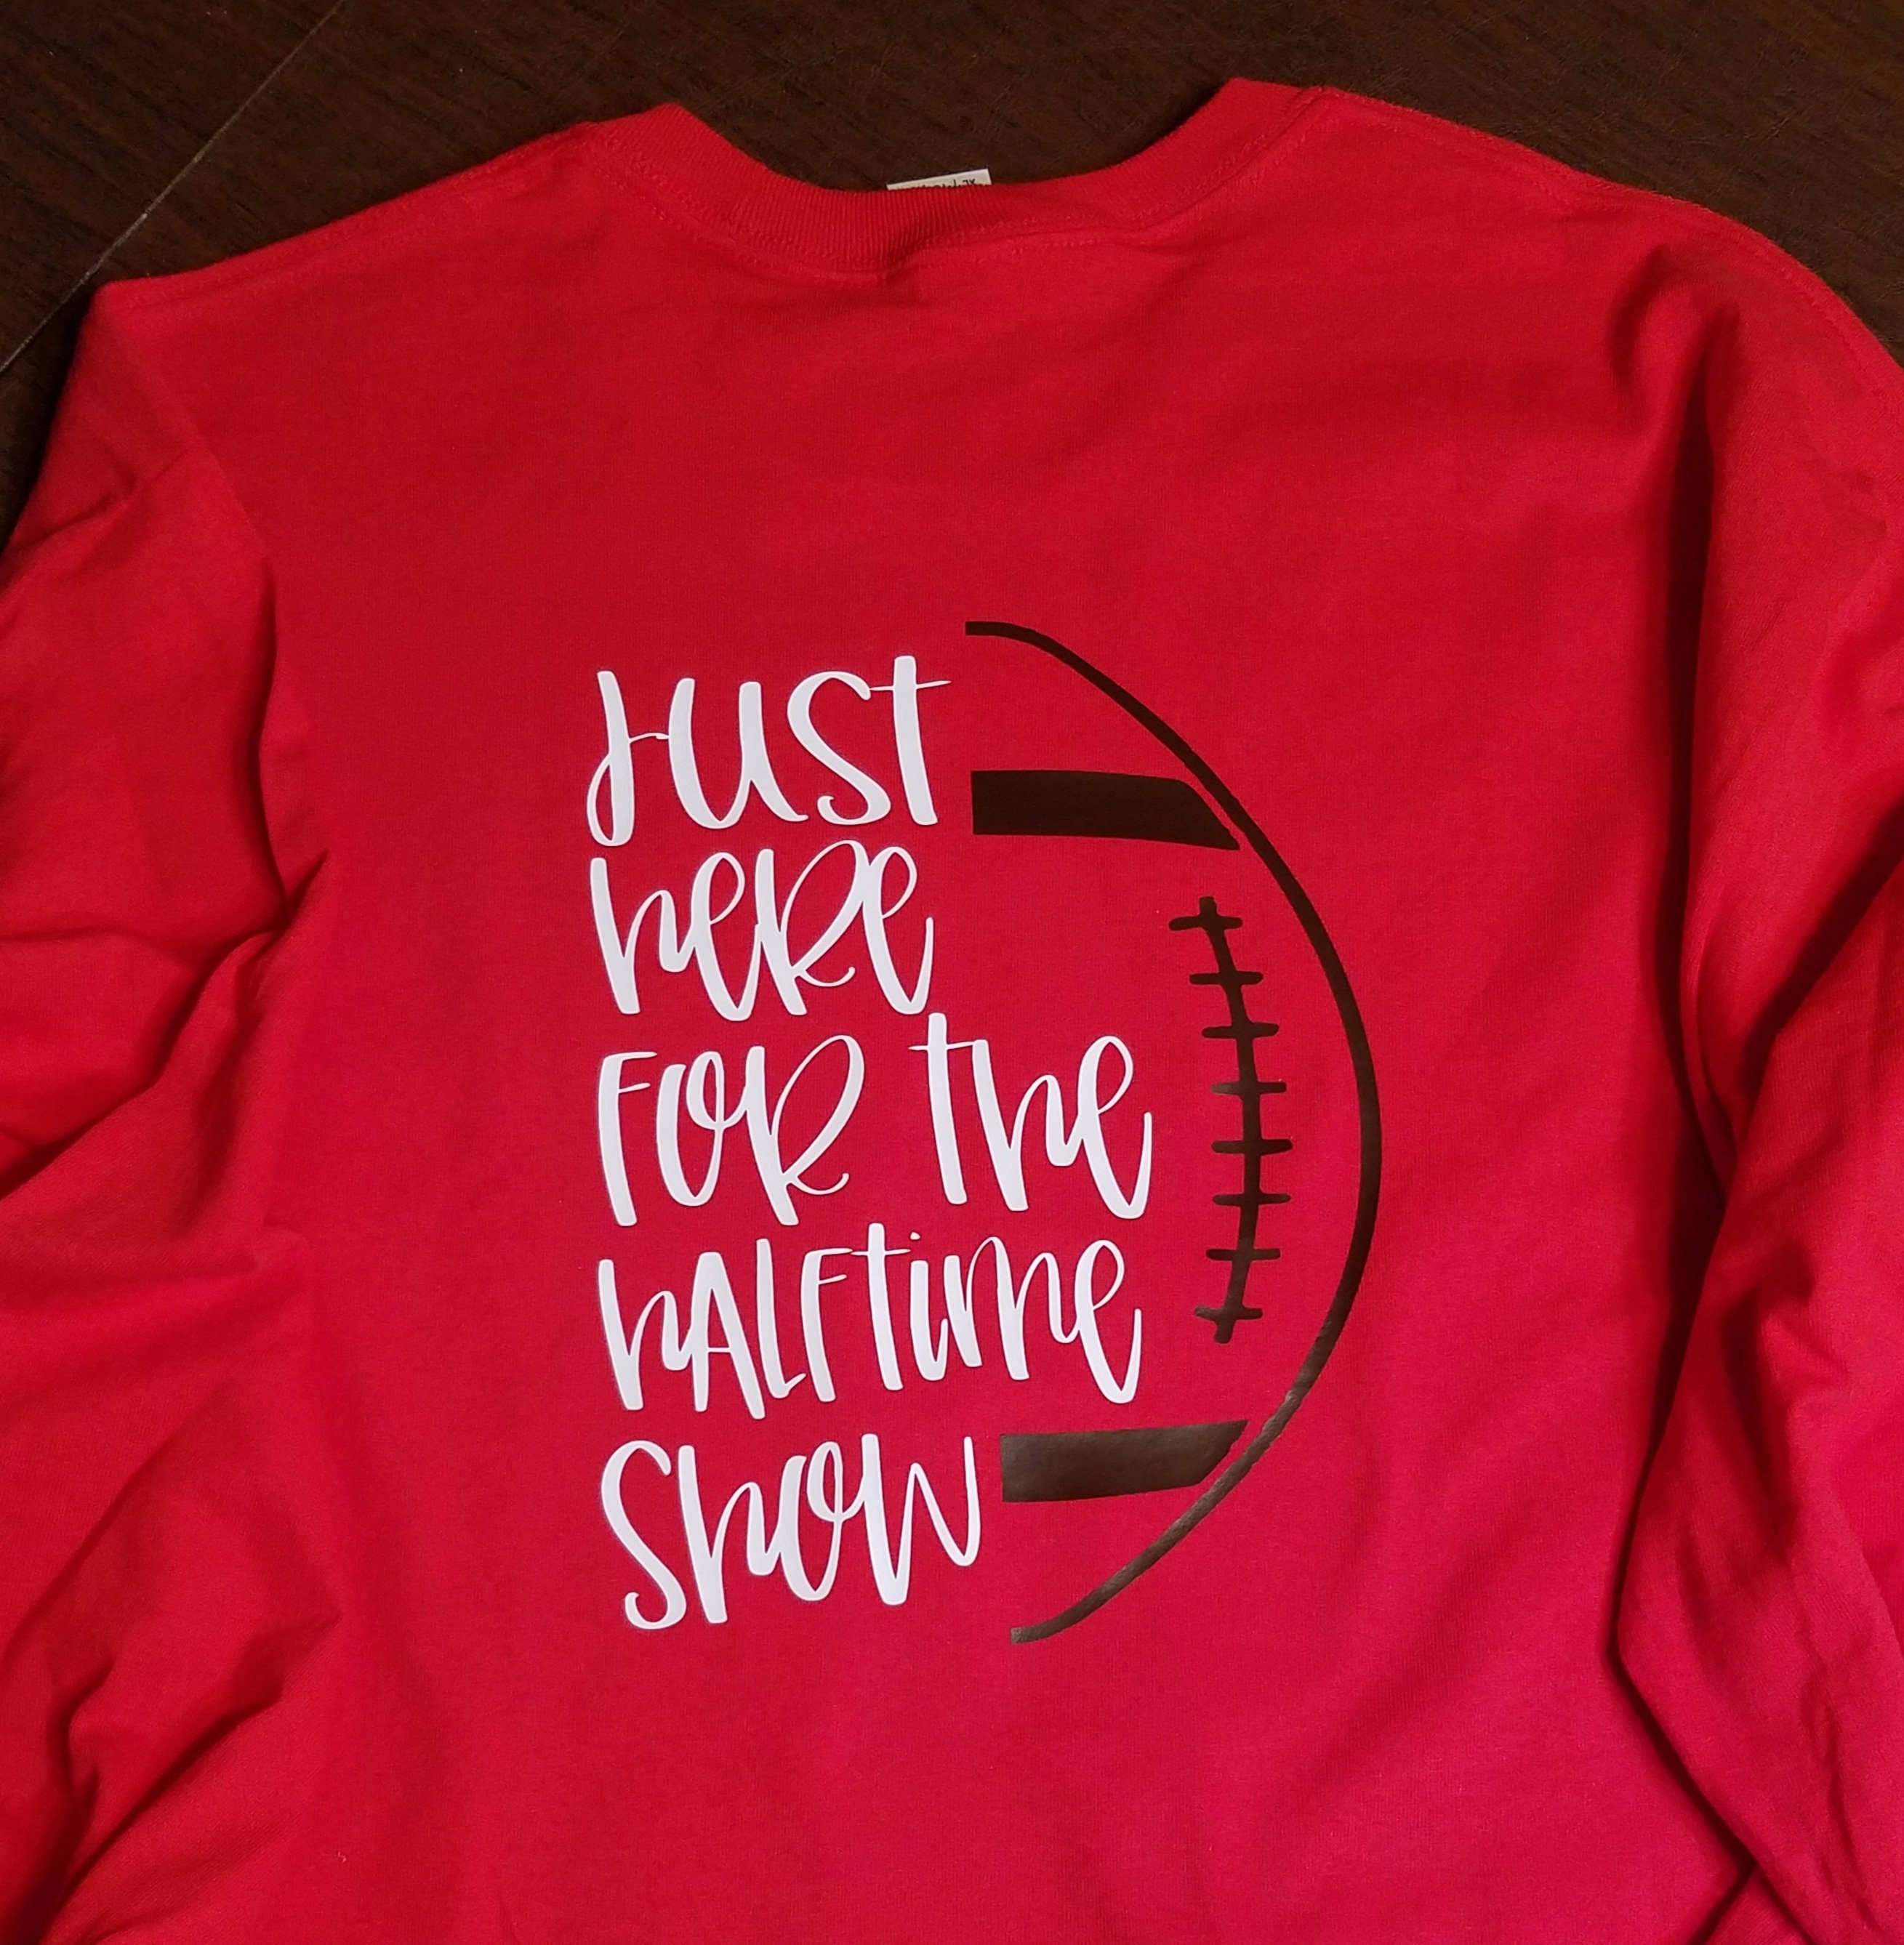 Football Sayings For Shirts